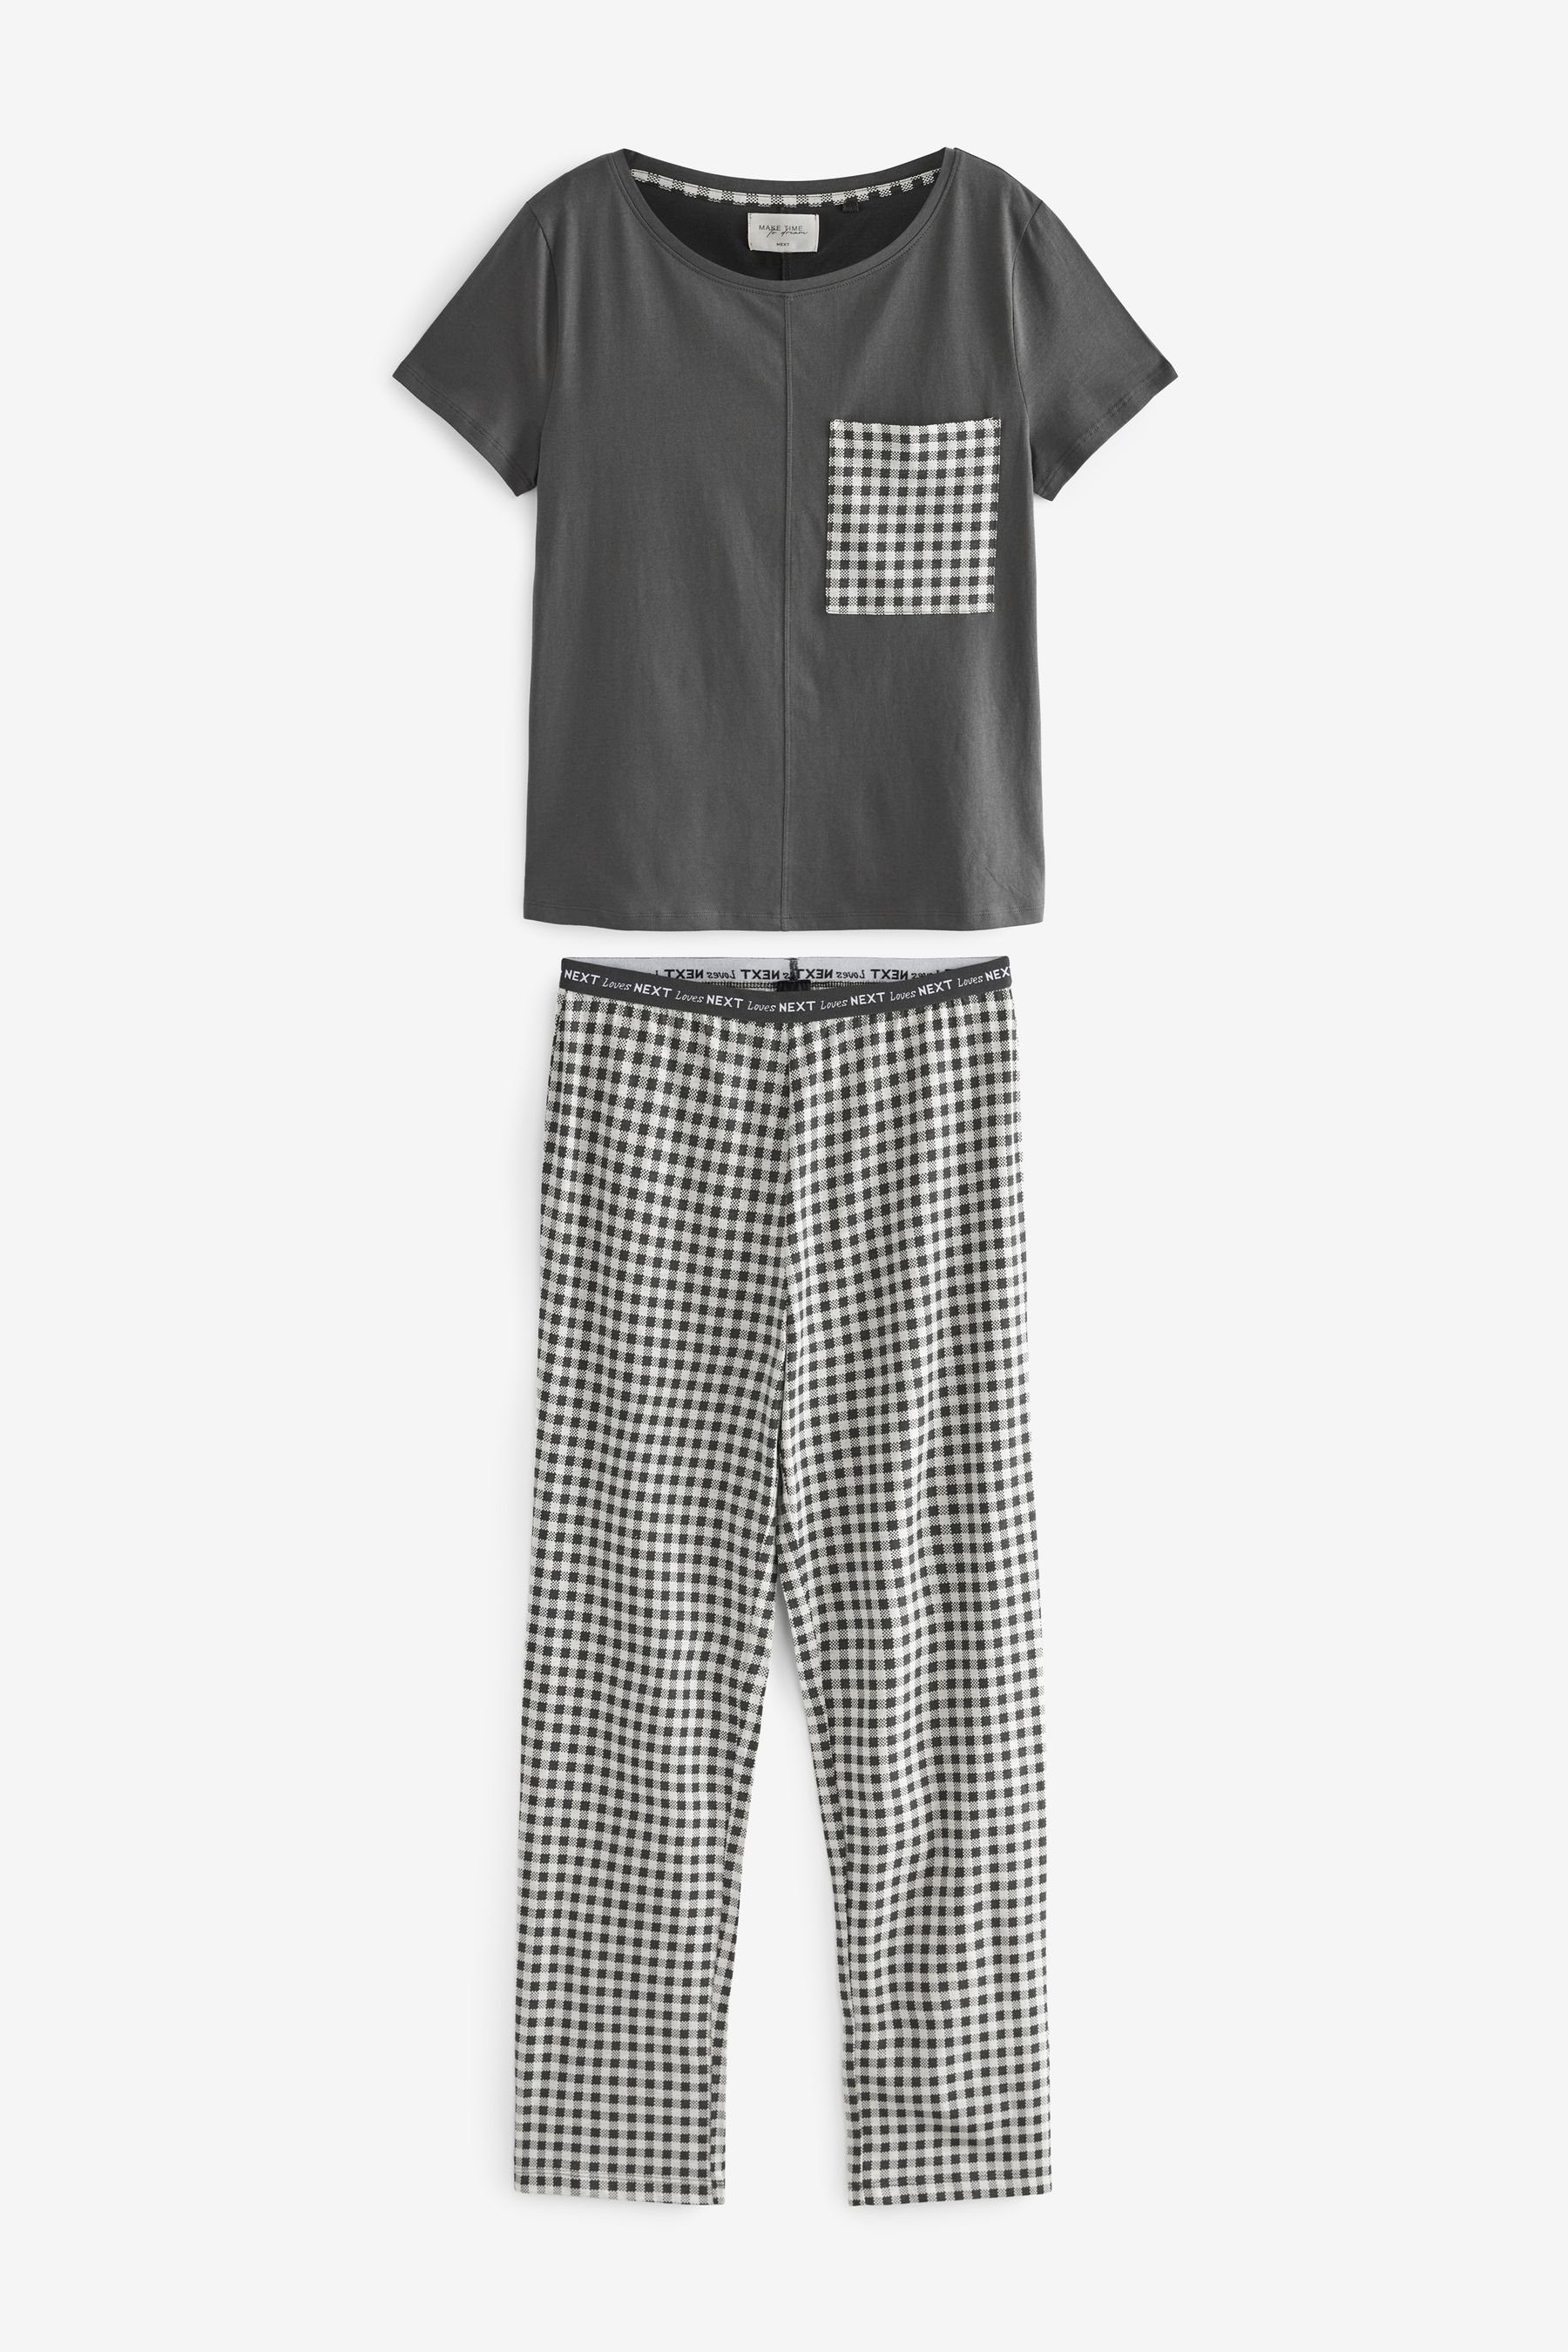 tlg) Baumwoll-Schlafanzug. Pyjama Next (2